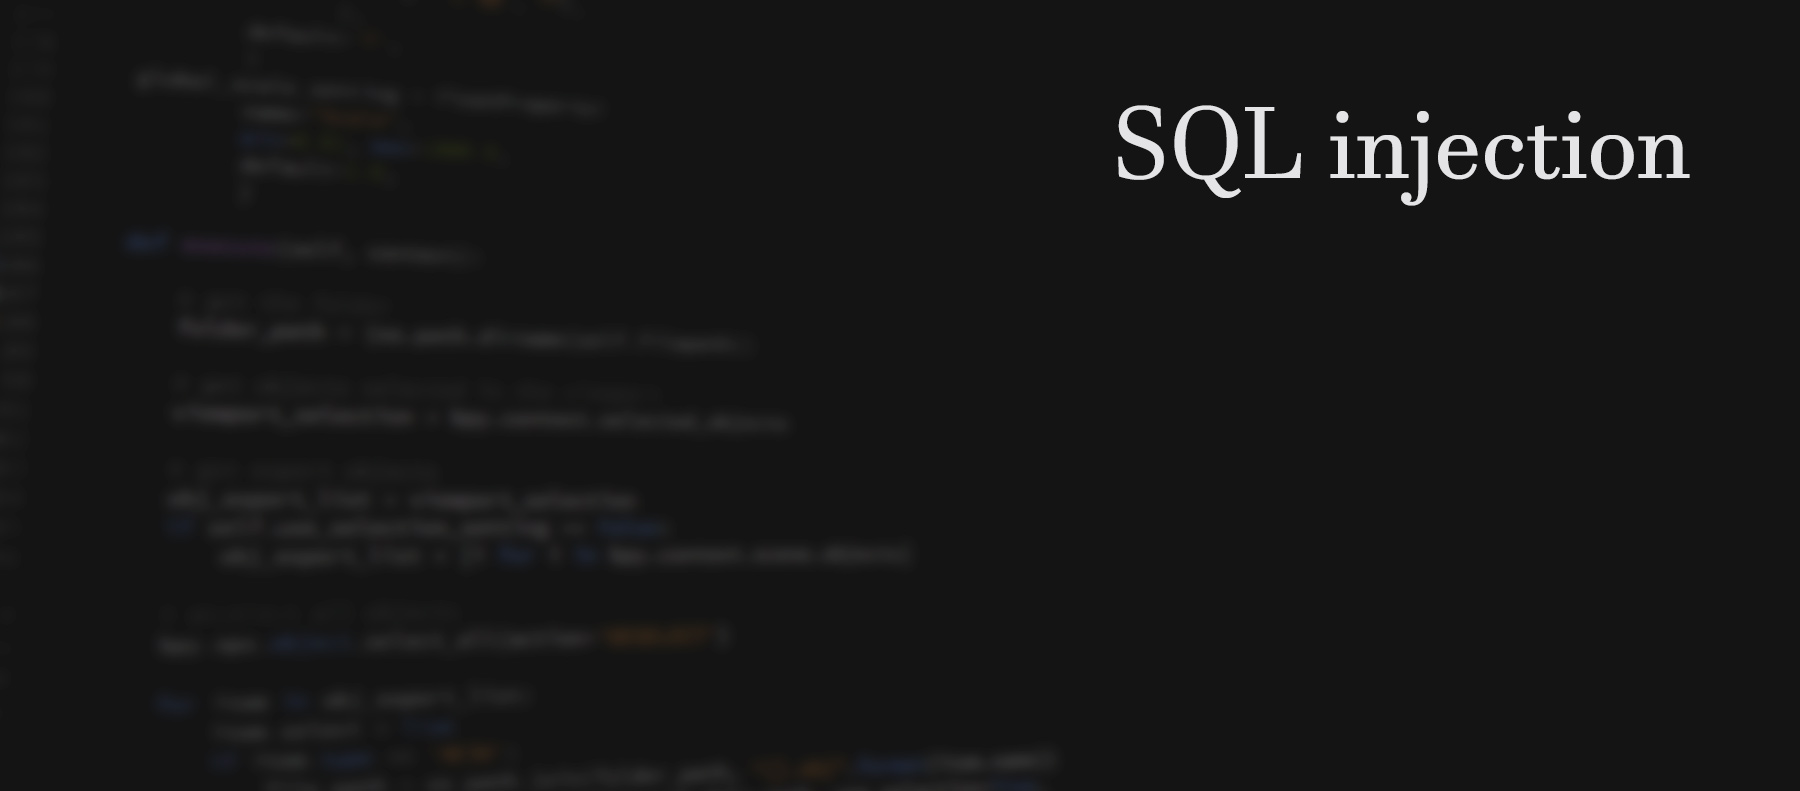 Prevenir ataques mediante inyección SQL (SQL injection) en PHP